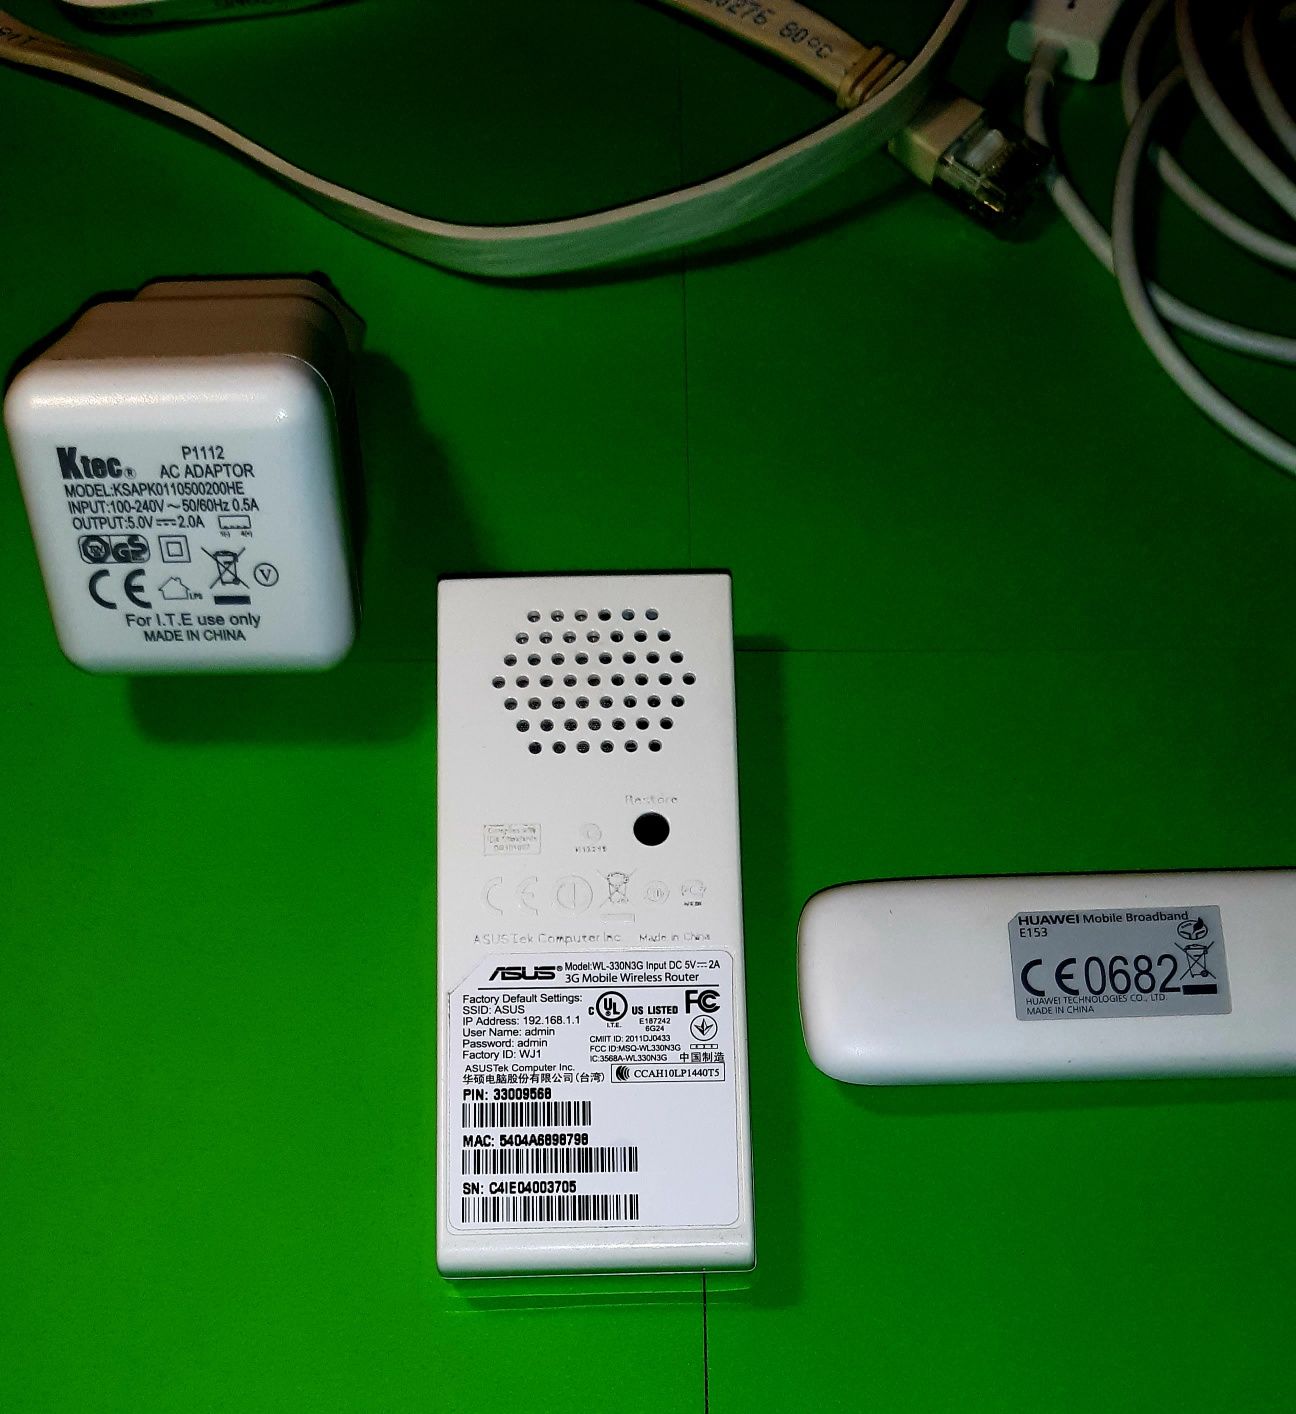 WI-FI Роутер ASUS WL-330N3G із підтримкою 3G/4G модему